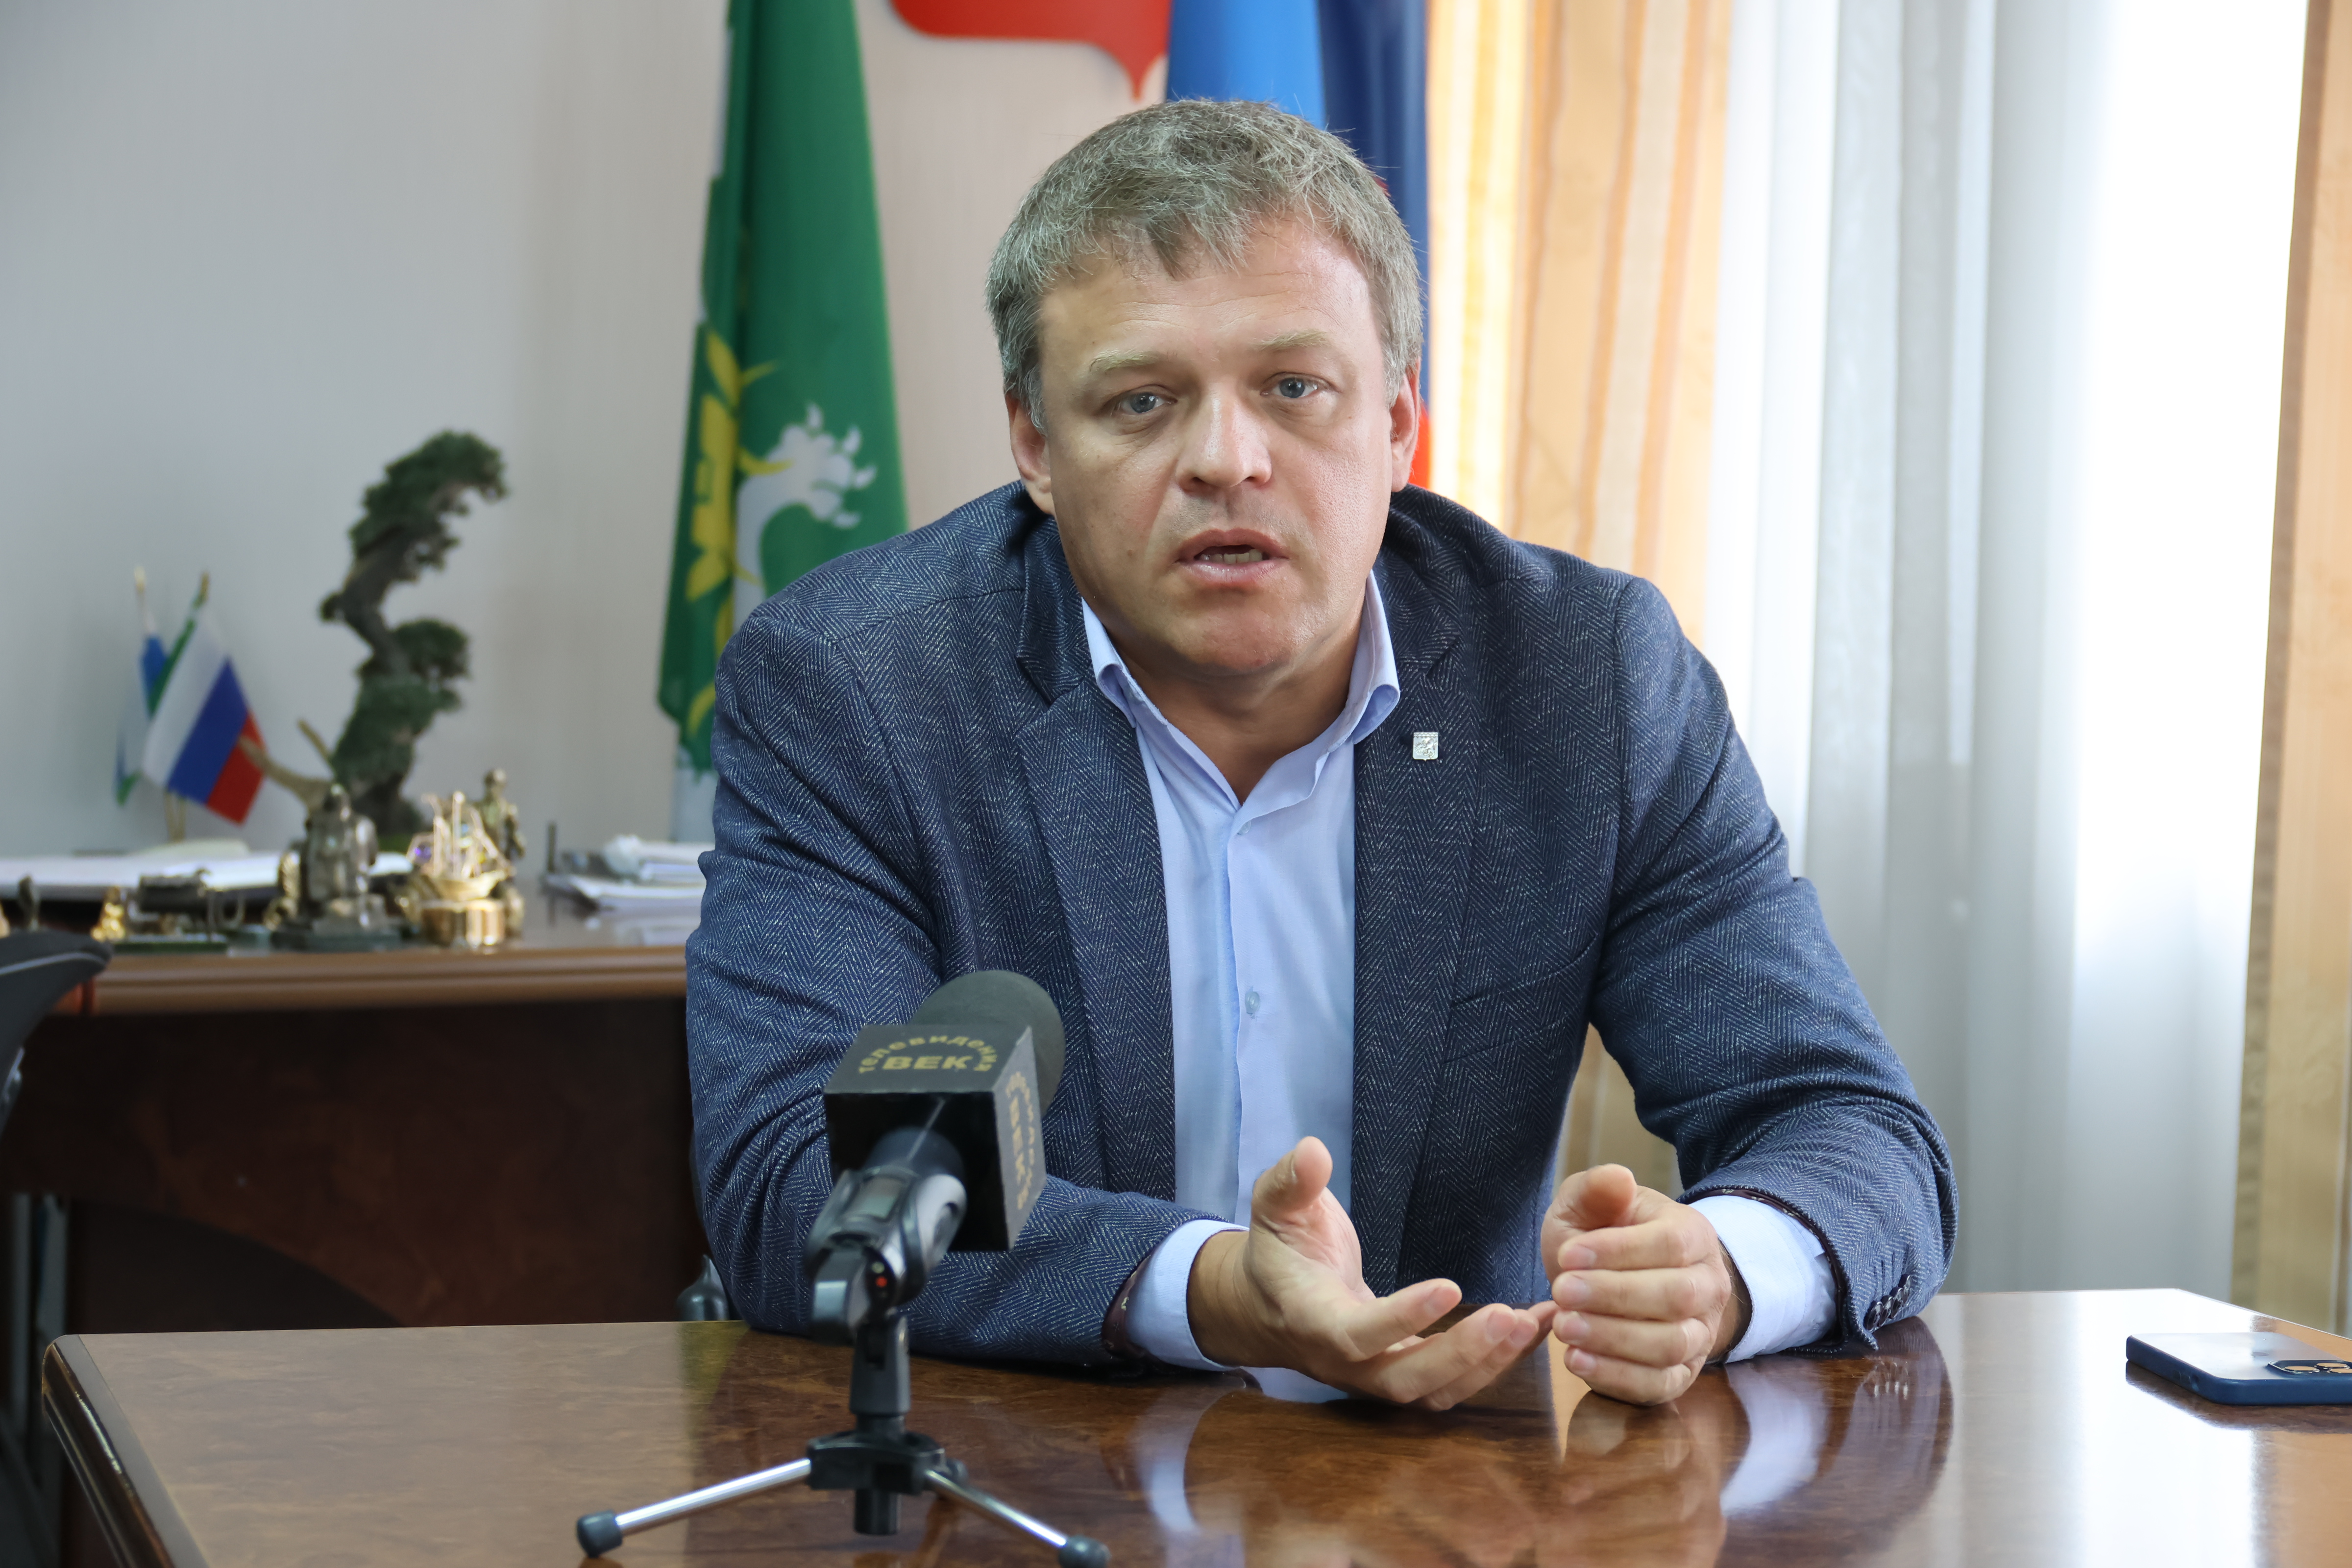 Первый заместитель главы города Березовского Александр Коргуль рассказал, почему важно зарегистрировать имущество до 2024 года